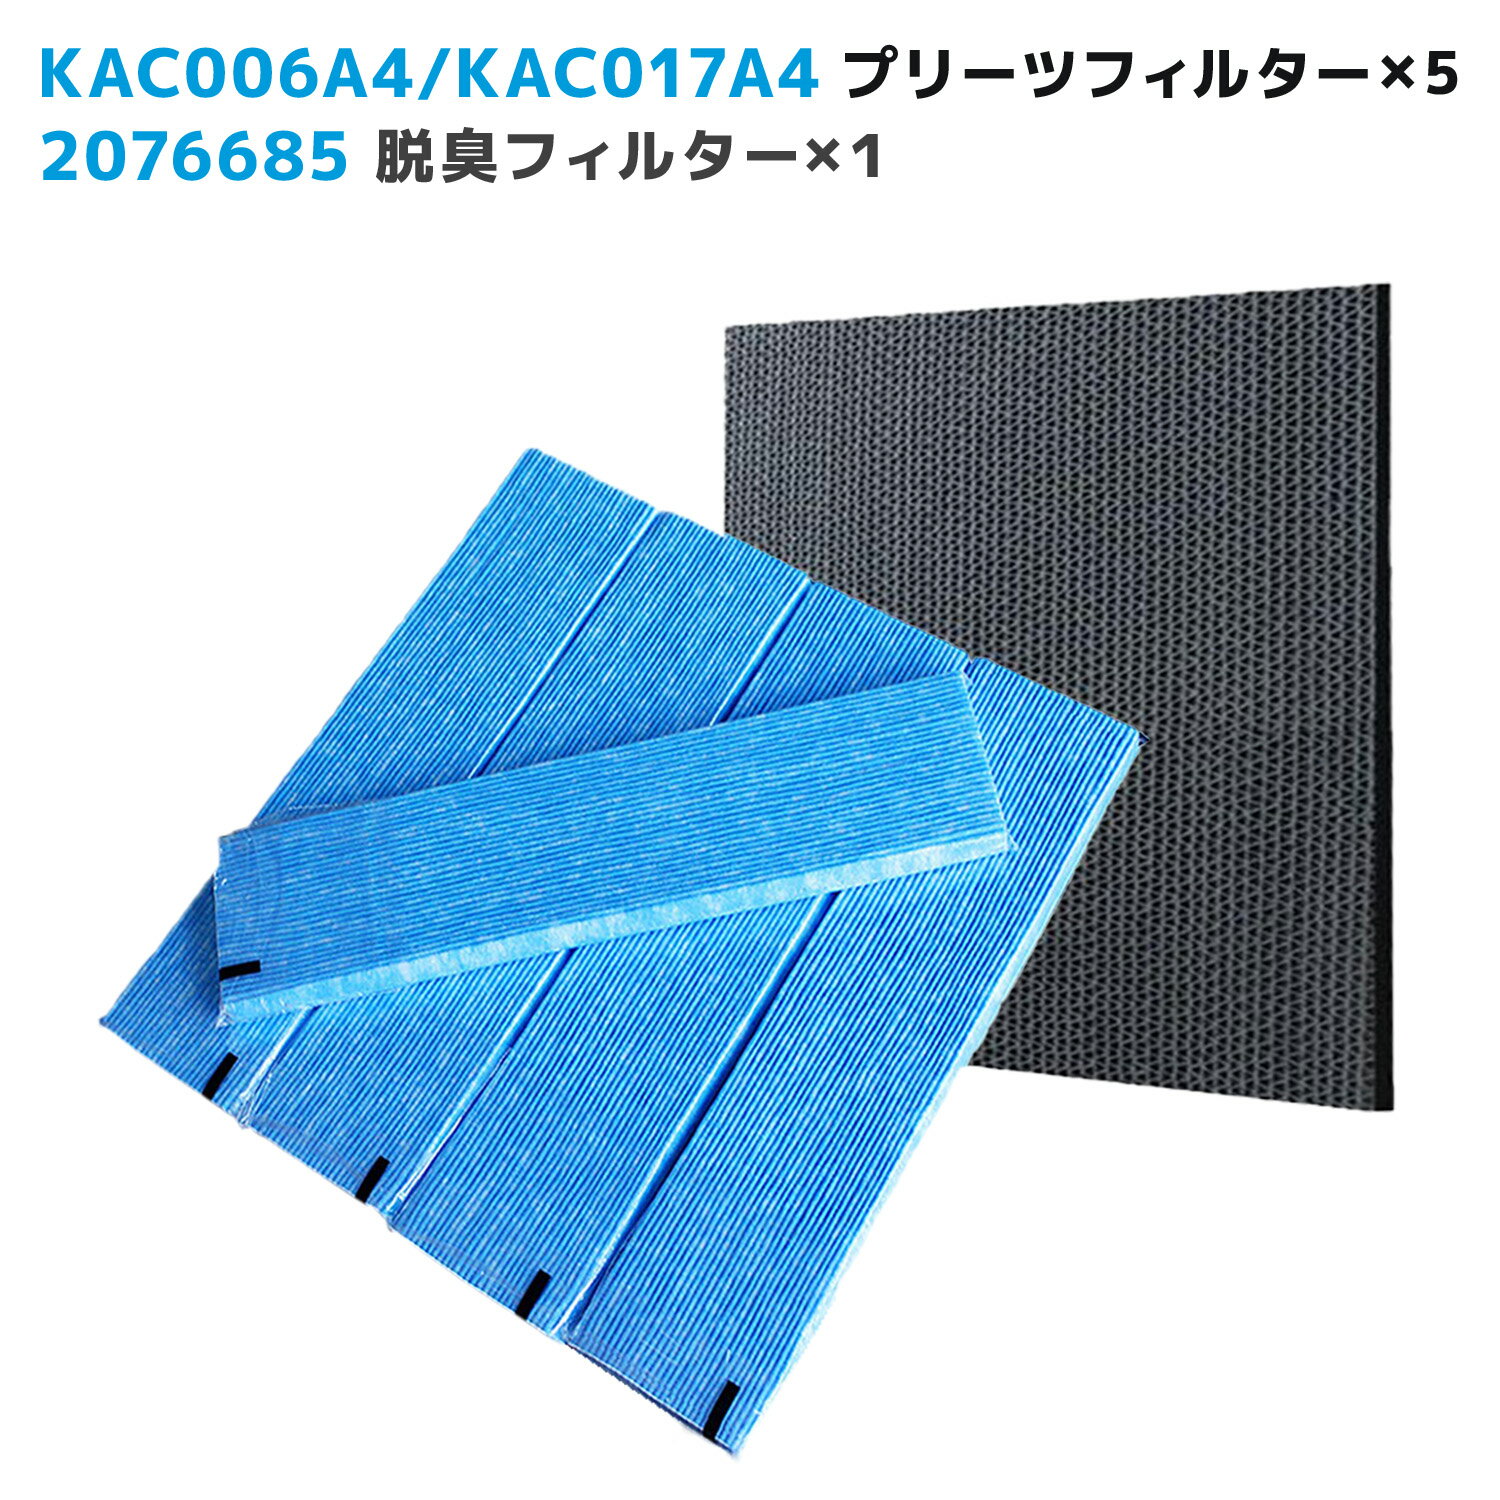 対応品番:KAC006A4と後継品 KAC017A4(99A04